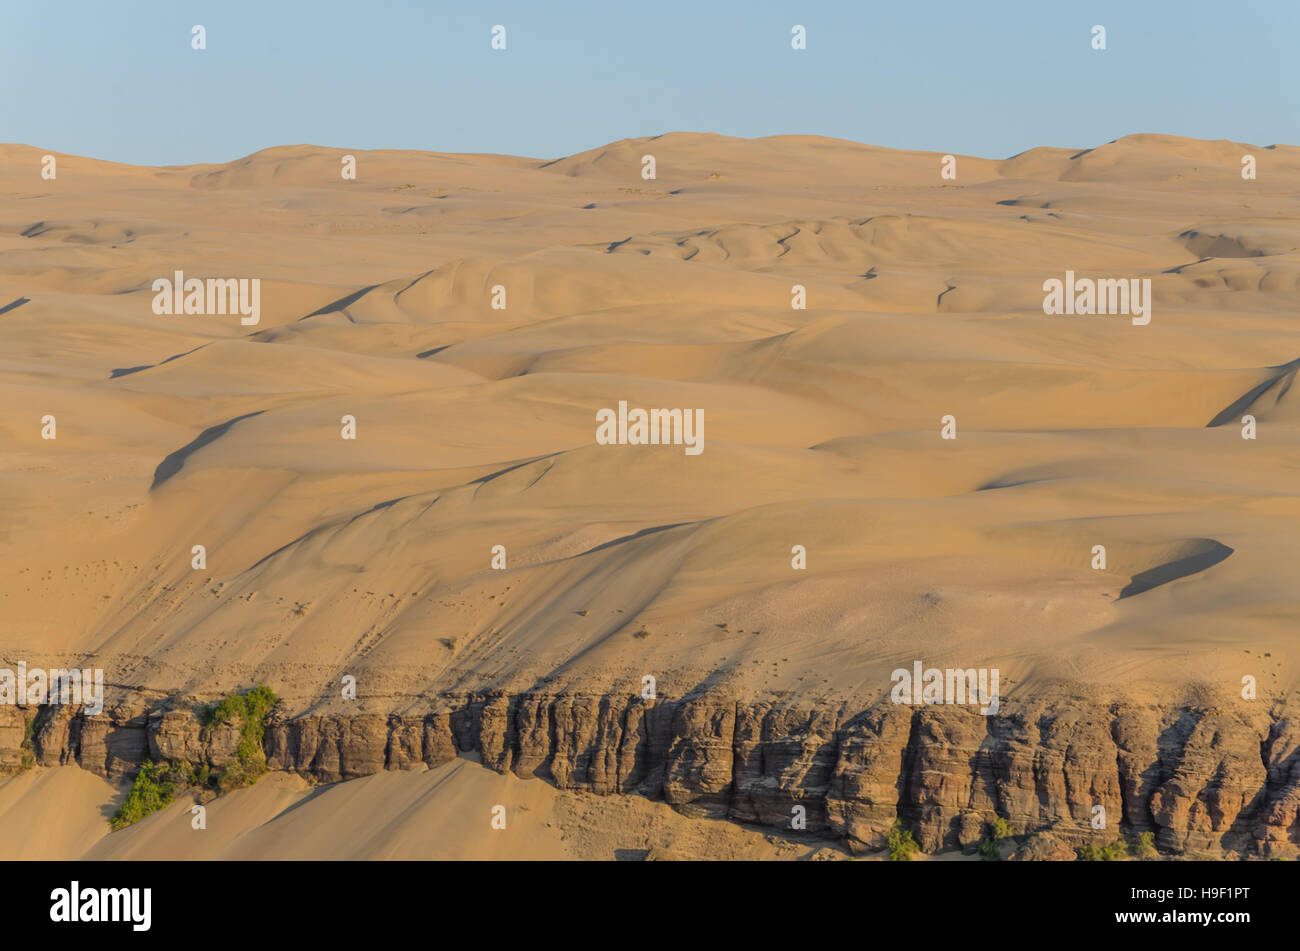 Beeindruckend hoch aufragenden Sanddünen der Namib-Wüste von Angola und Namibia Stockfoto